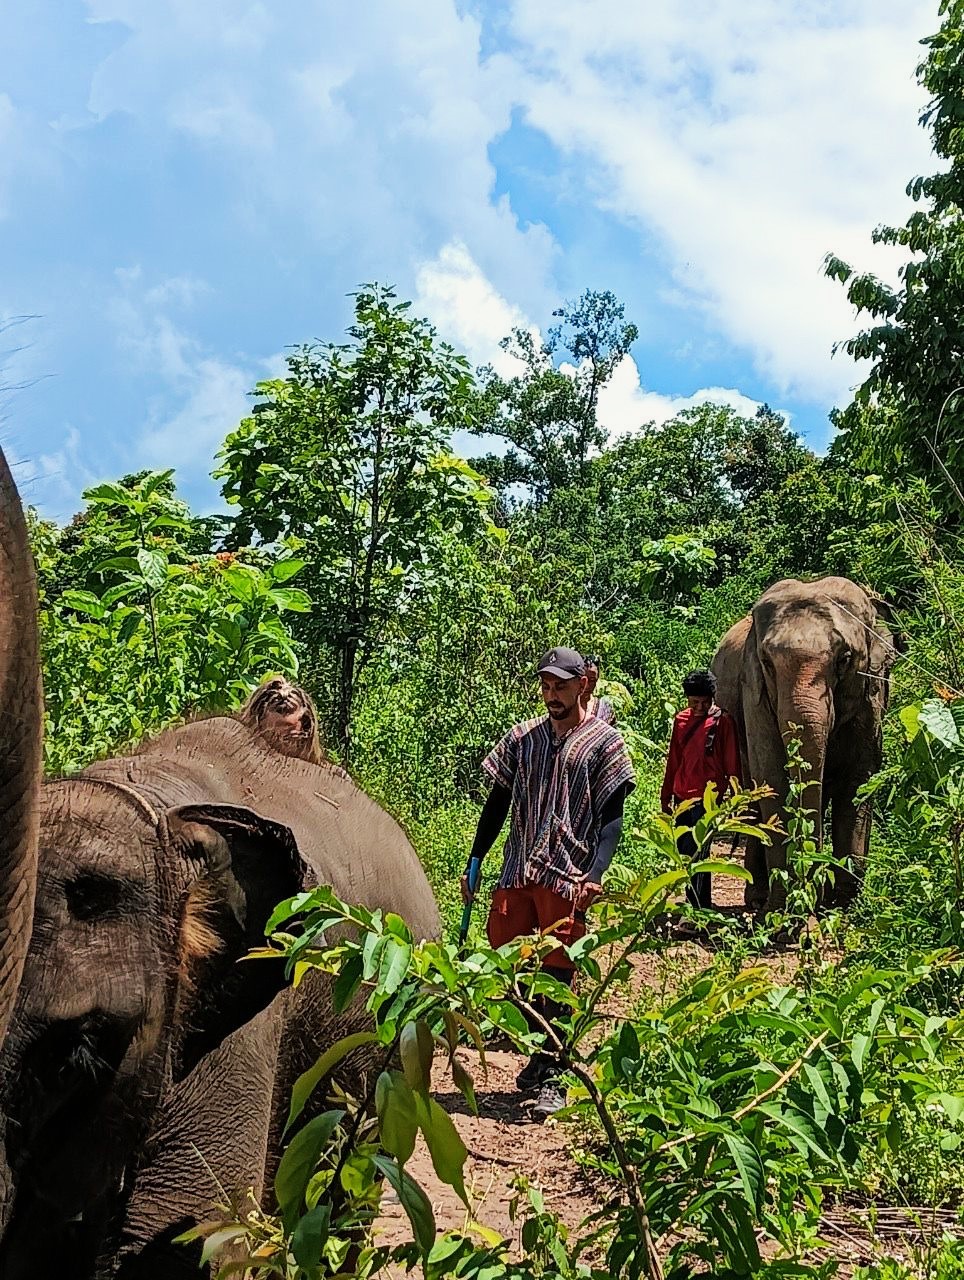 Einzigartige Begegnung: AIFS Adventure Trip - Elefantenwoche in Thailand mit faszinierenden Elefanten